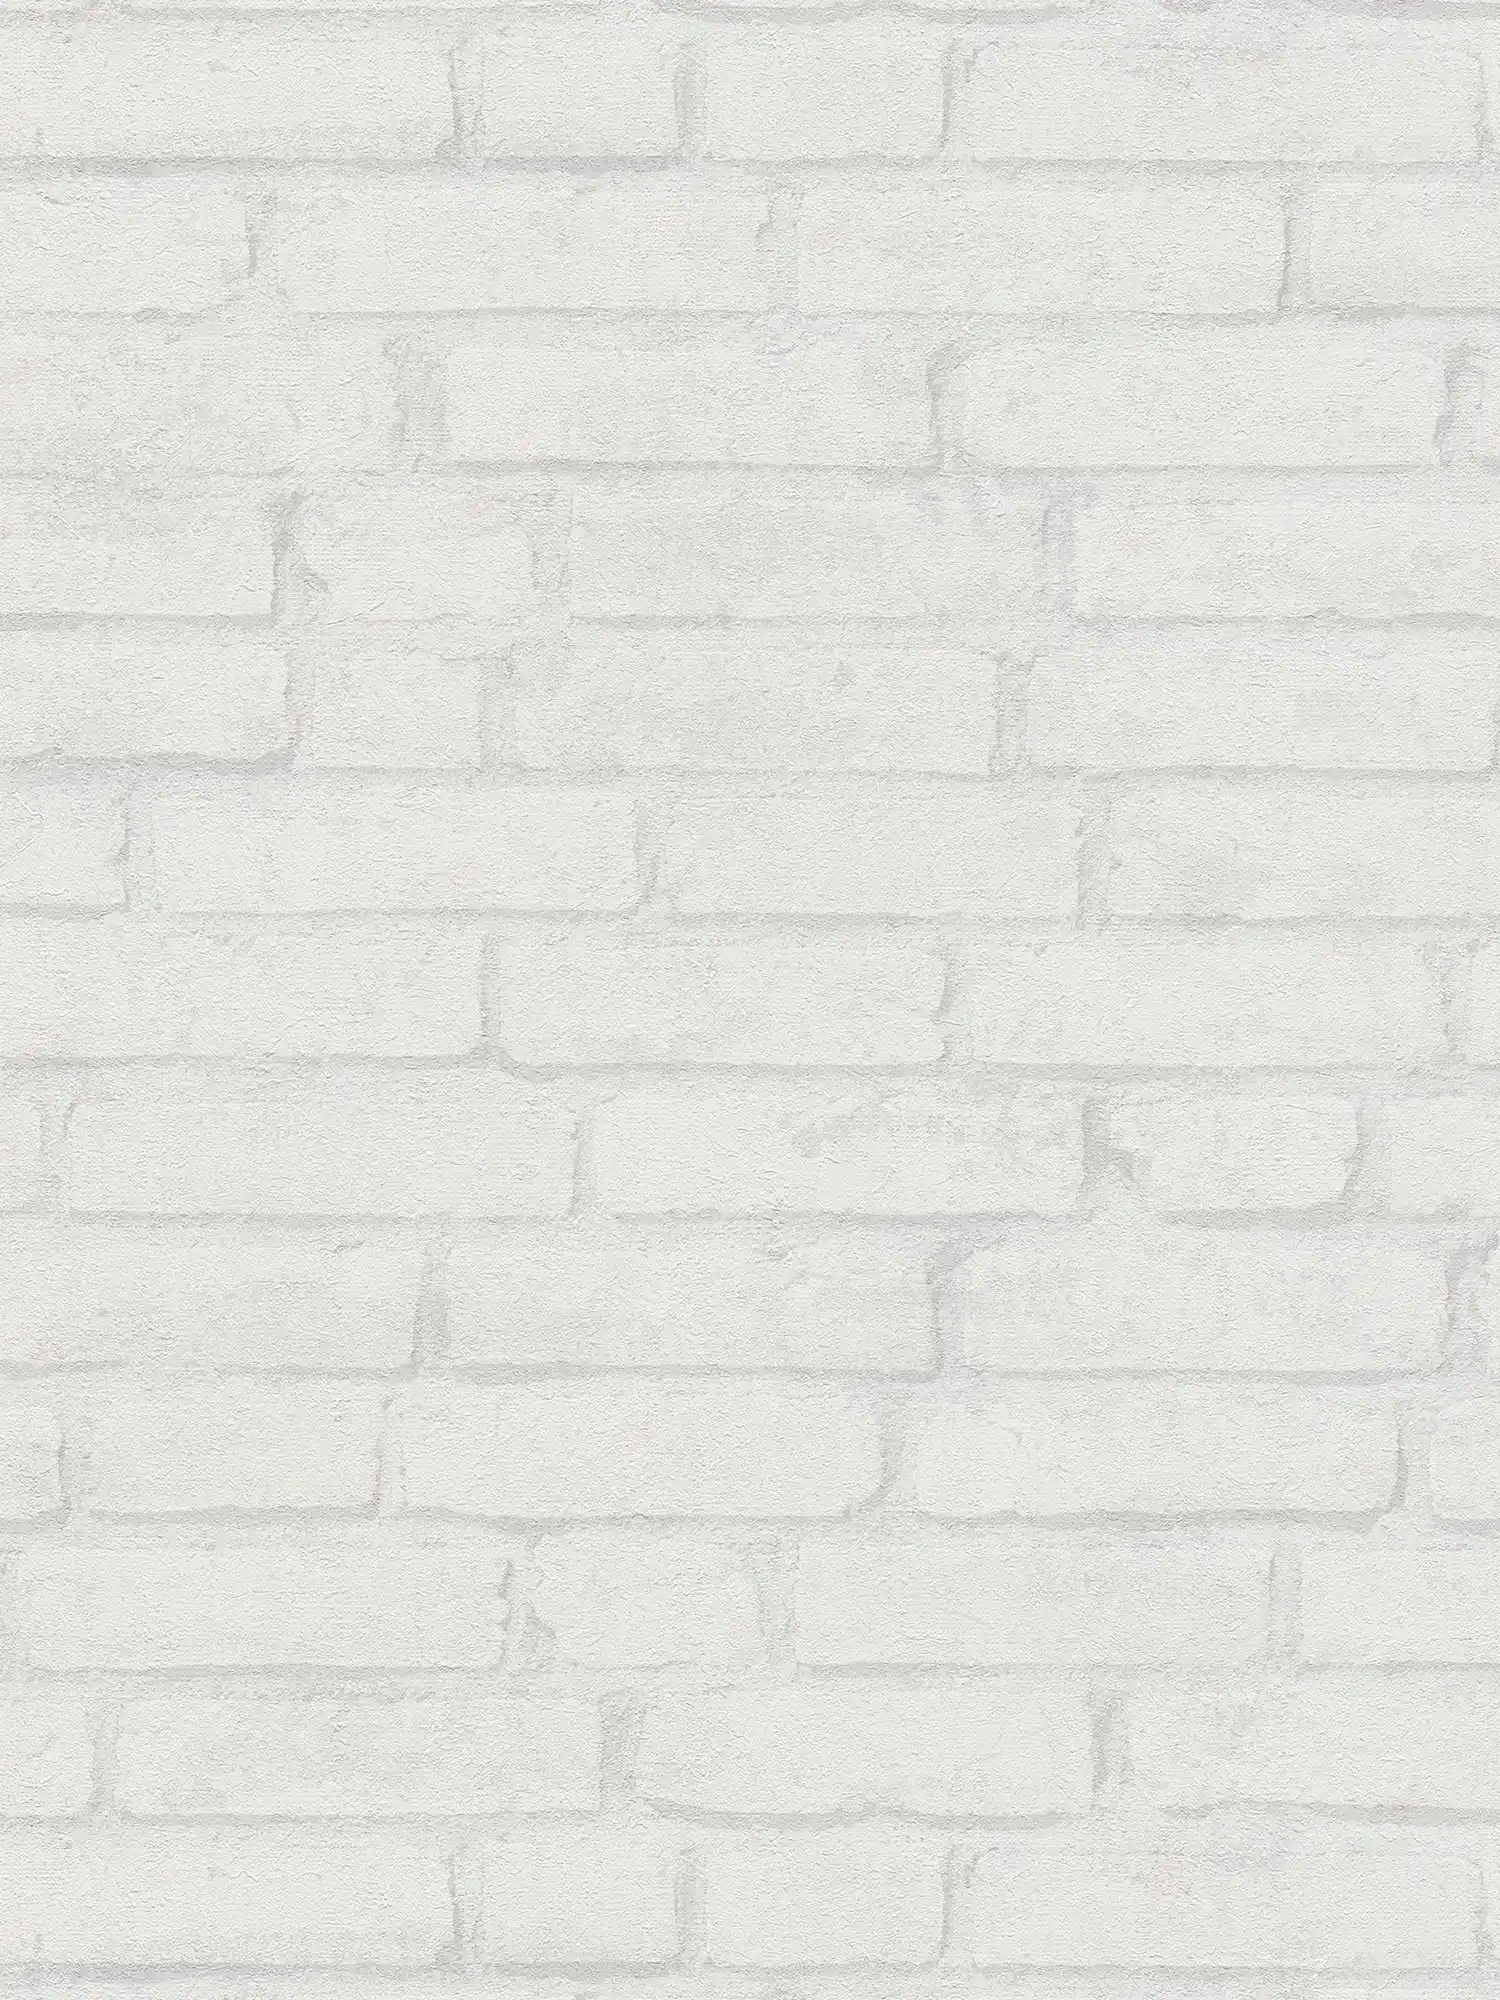 Papier peint brique clair Motifs de briques dans le design industriel - blanc, gris
